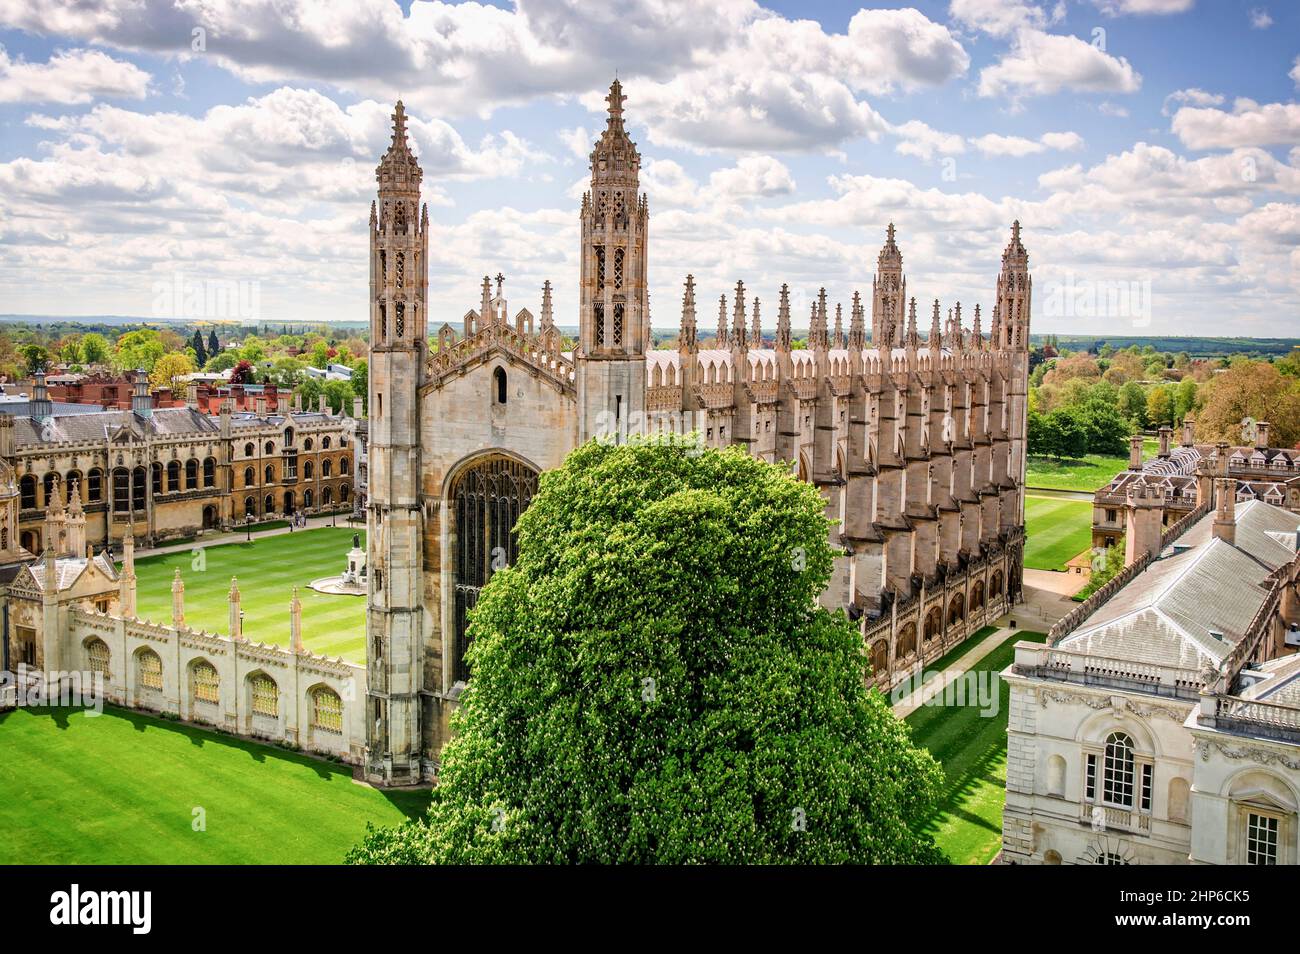 Cambridge, Royaume-Uni : vue sur la chapelle de Kings College à Cambridge. La chapelle fut construite de 1446 à 1515 et souvent utilisée comme symbole de Cambridge. Banque D'Images